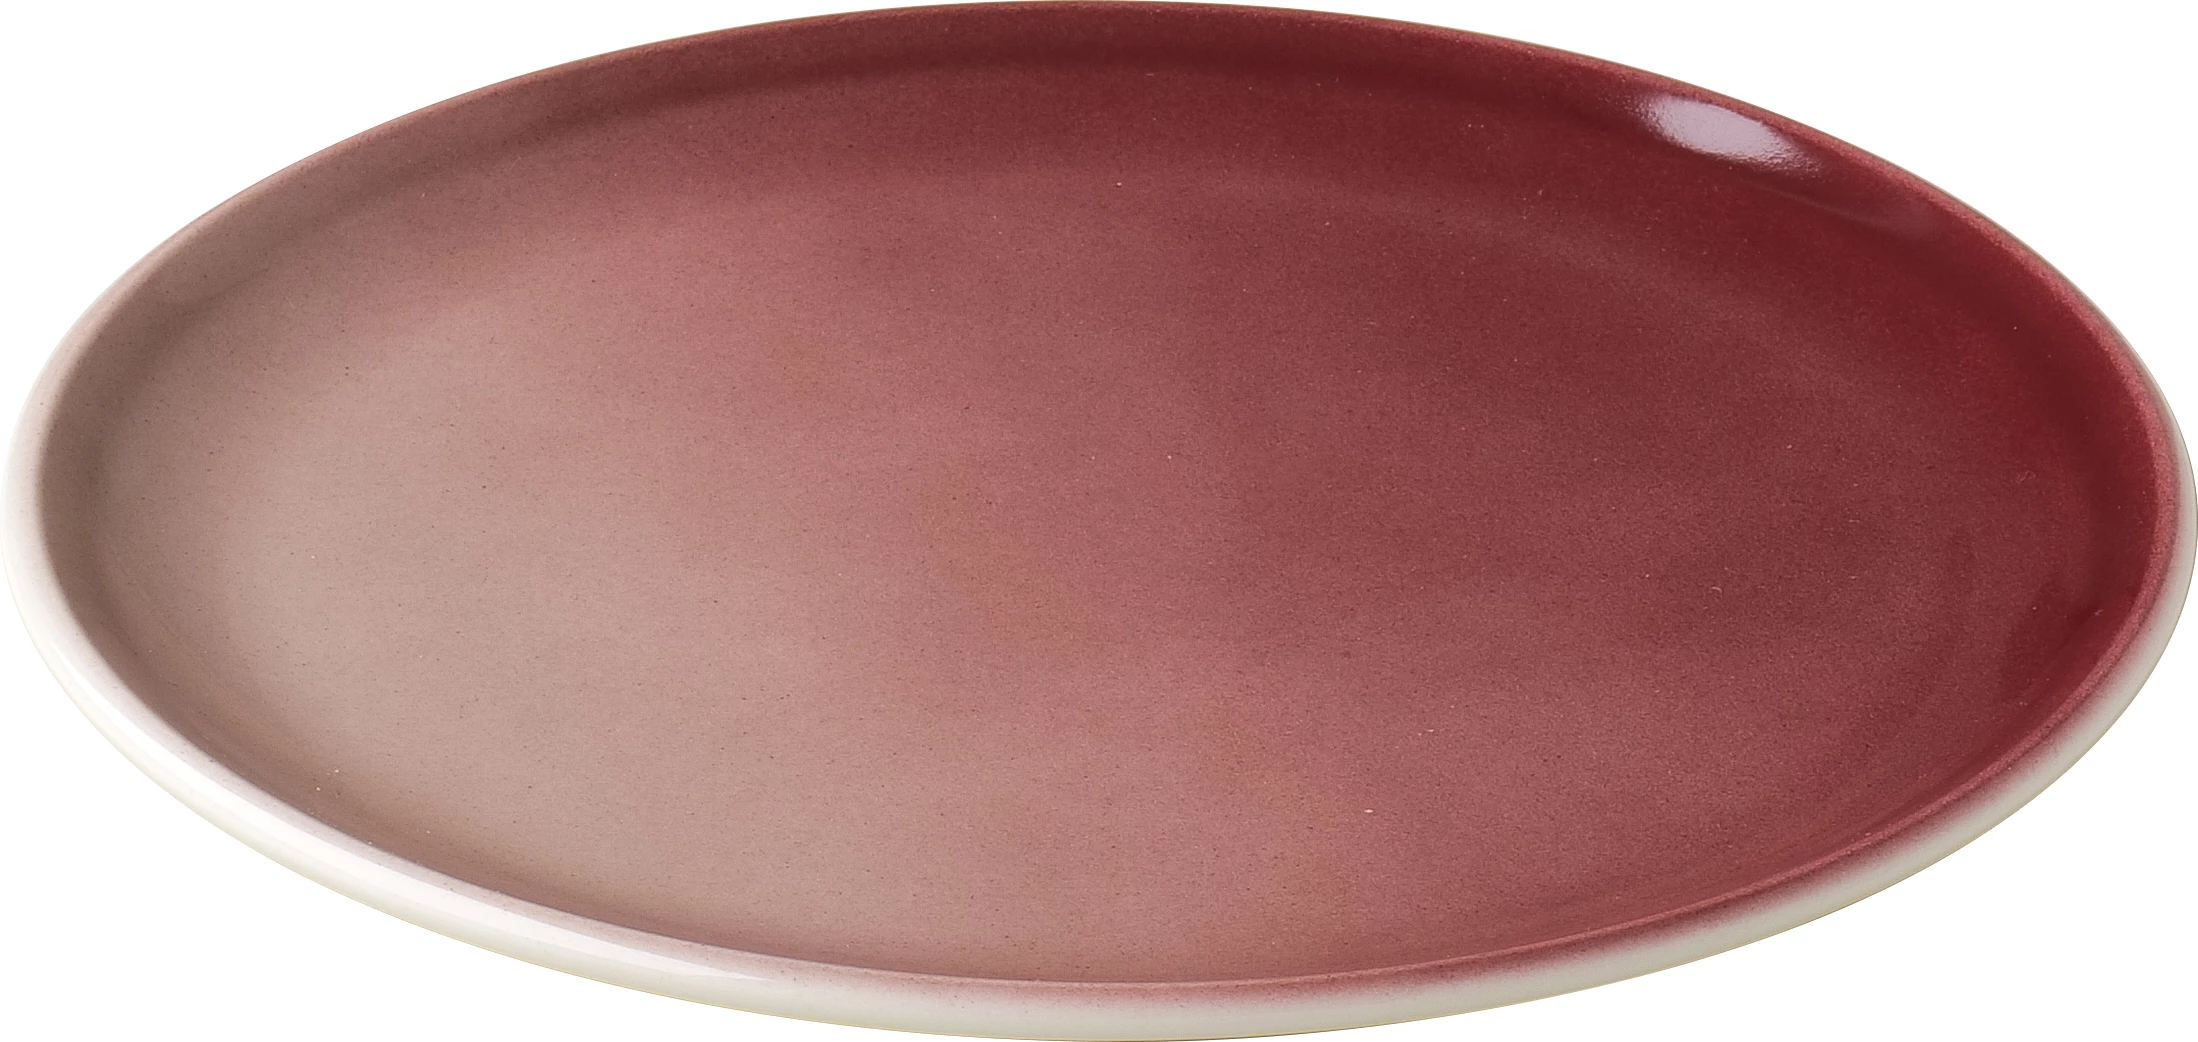 Figgjo Pax flad tallerken, rød, ø22 cm